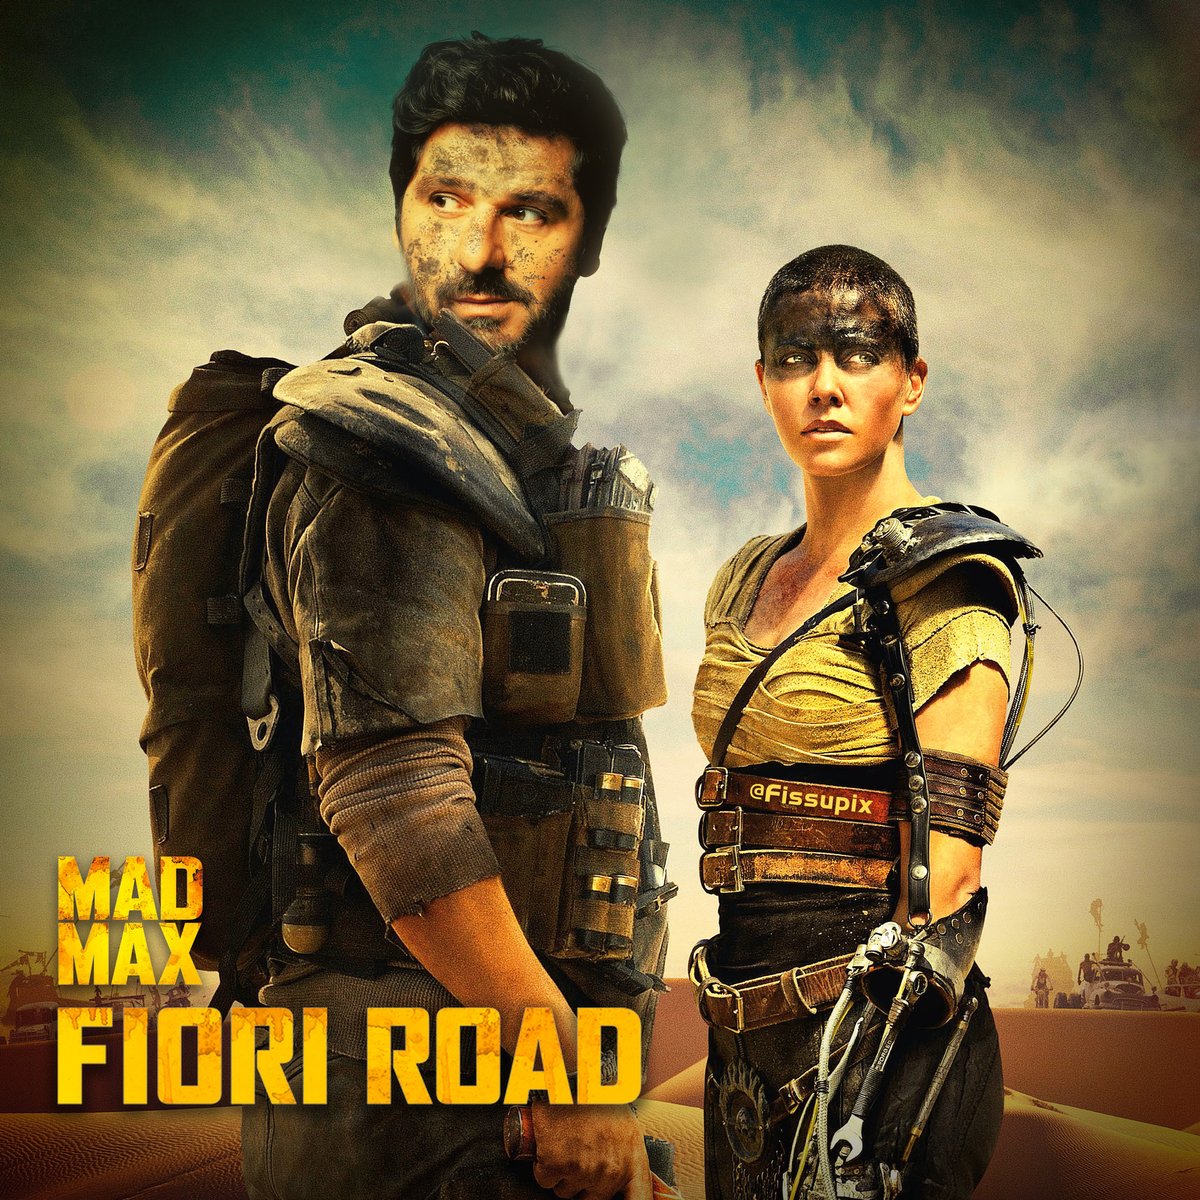 Fiori Road, la comédie musicale post-apocalyptique disponible uniquement sur FissuFlix !